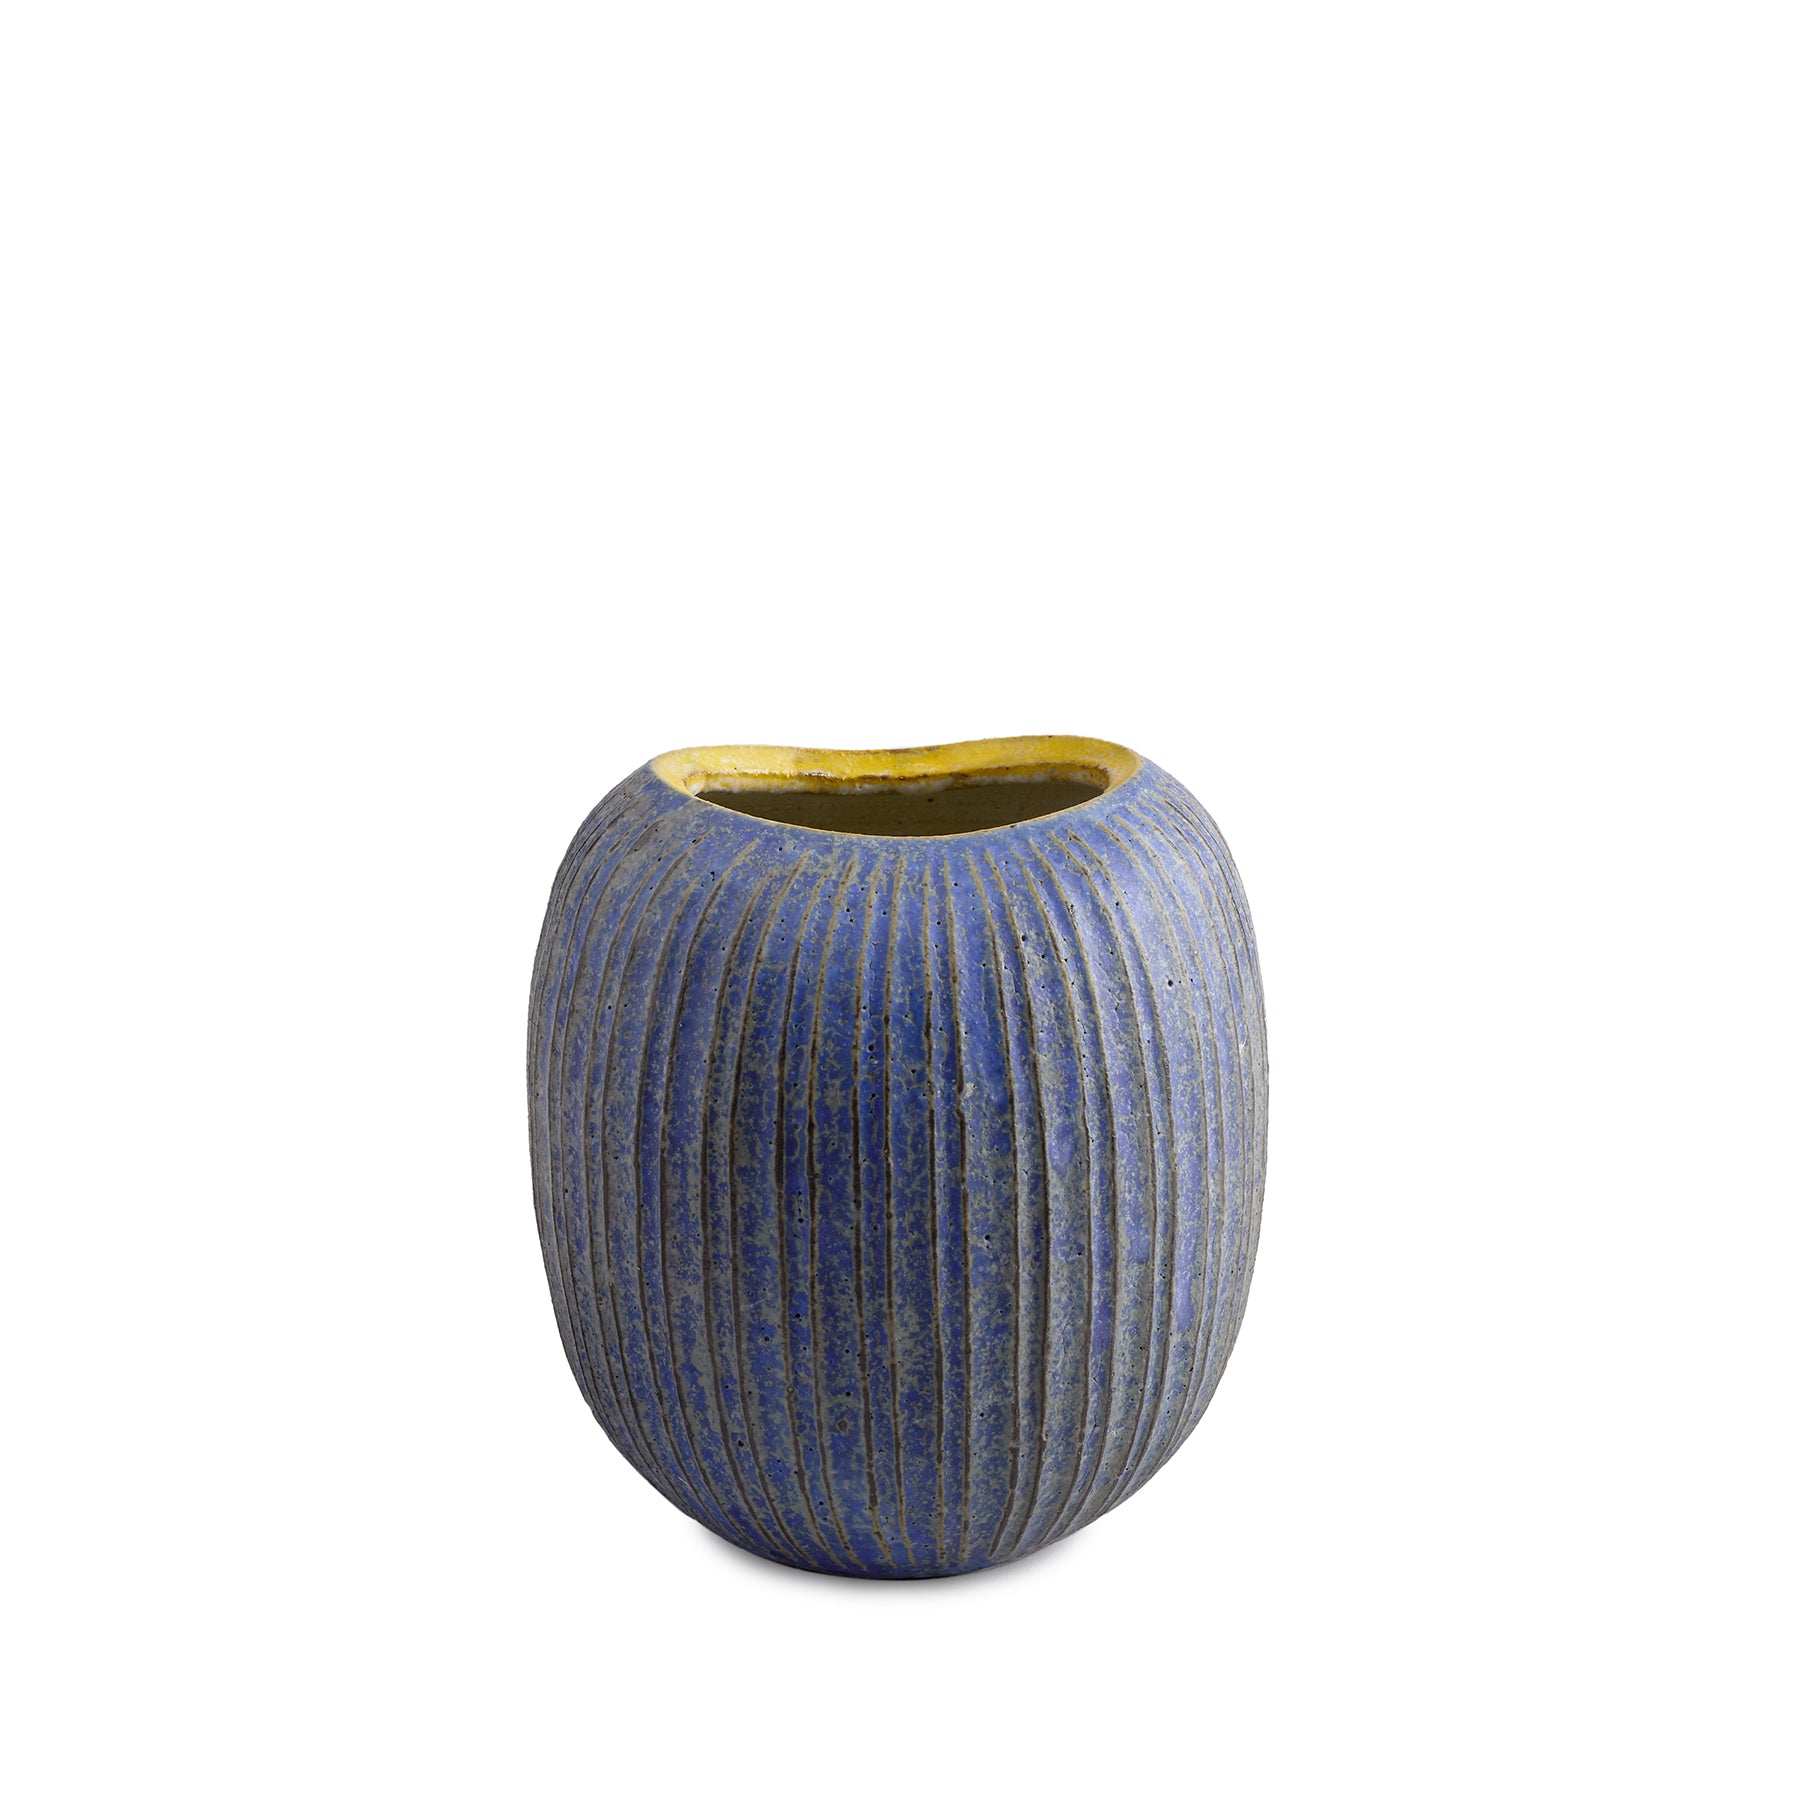 #4 Potbelly Vase in Indigo Zoom Image 1